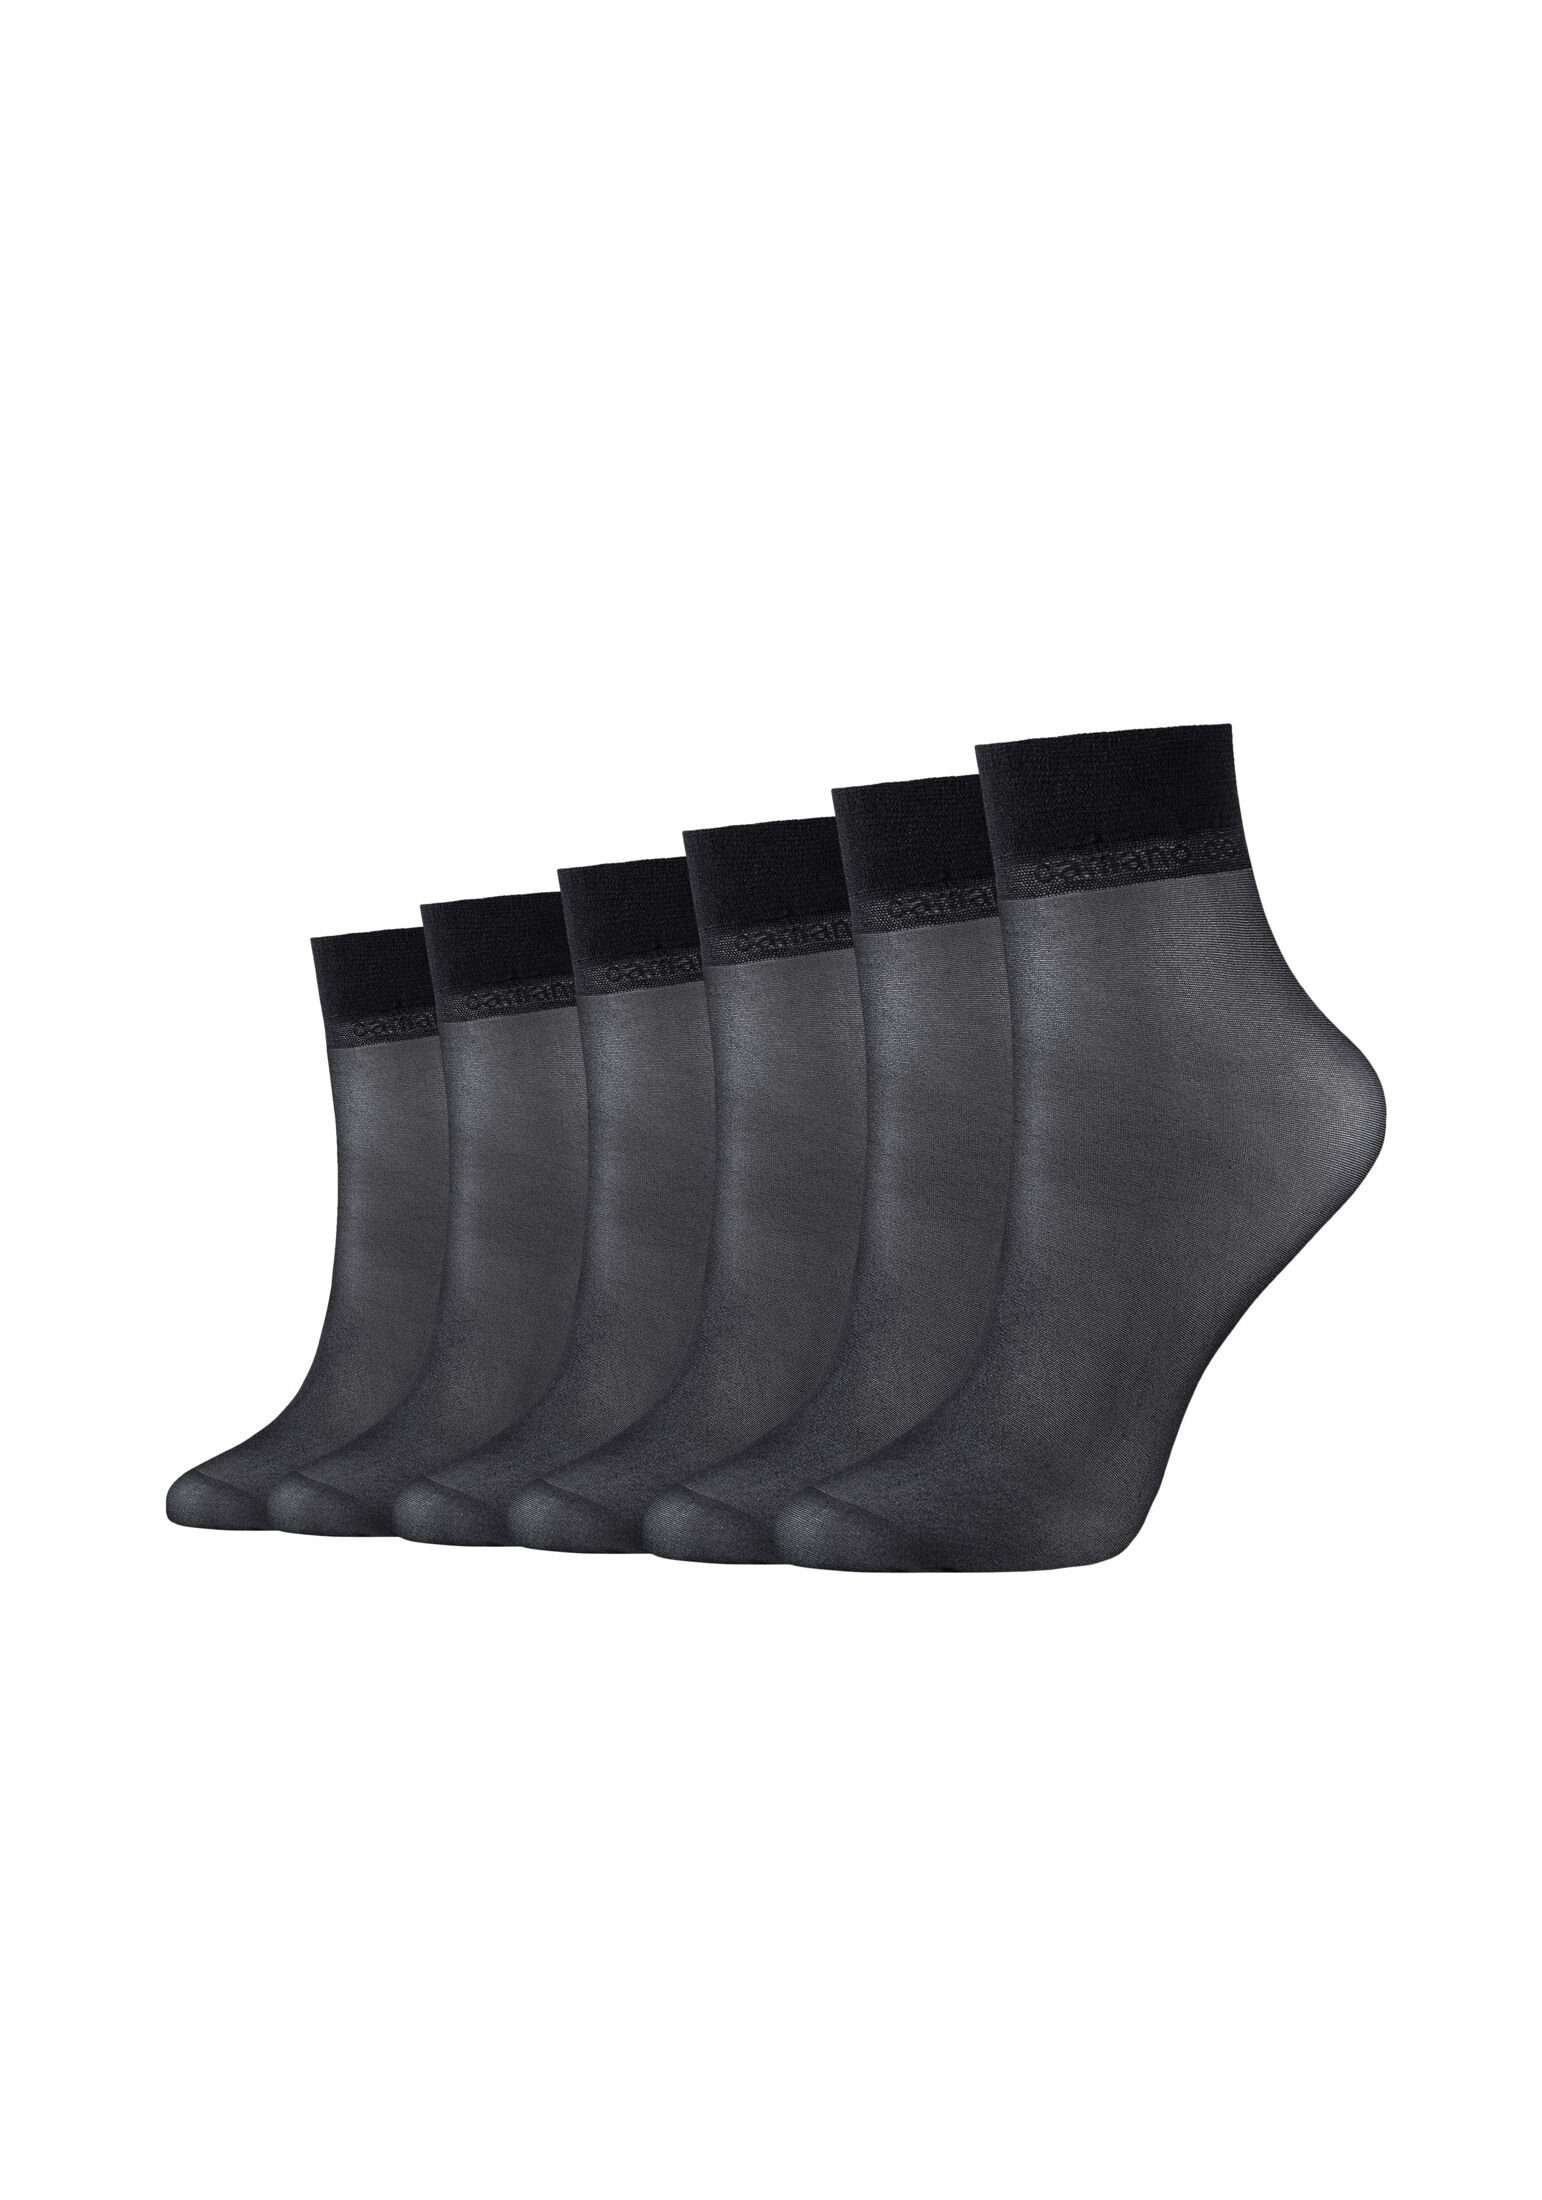 Camano Socken Socken 6er Pack black